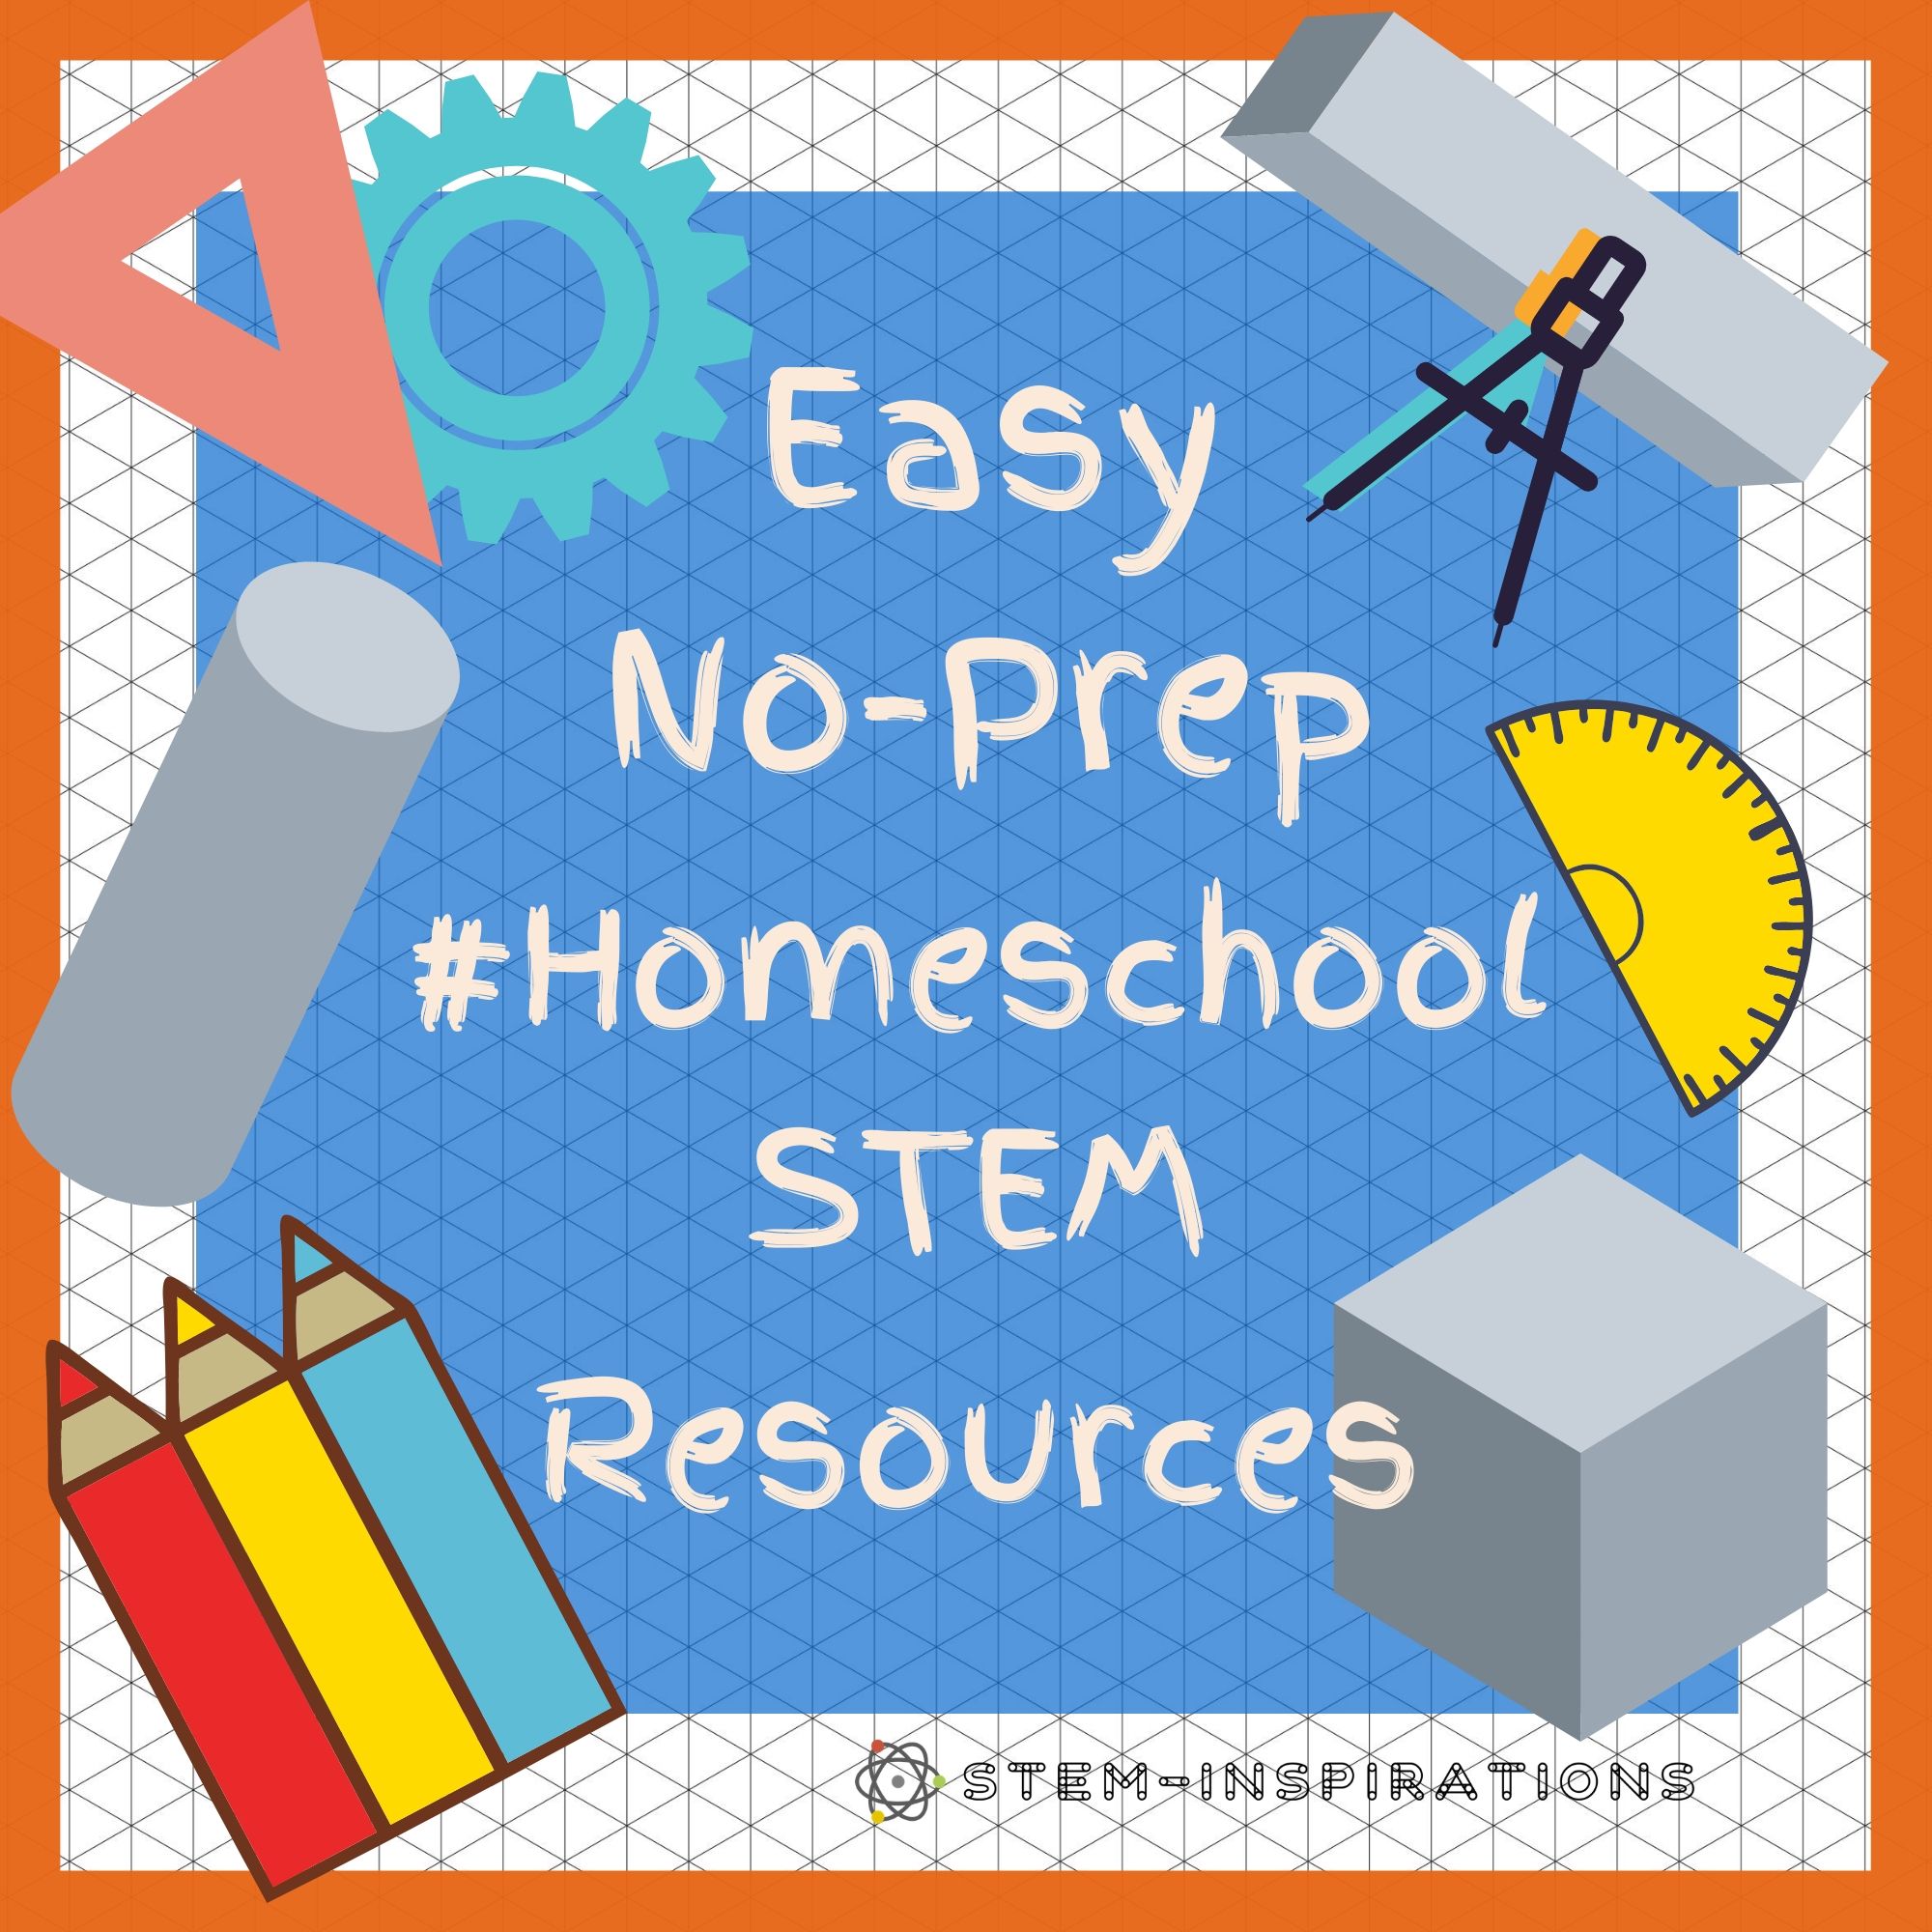 Easy No-Prep Homeschool STEM Resources